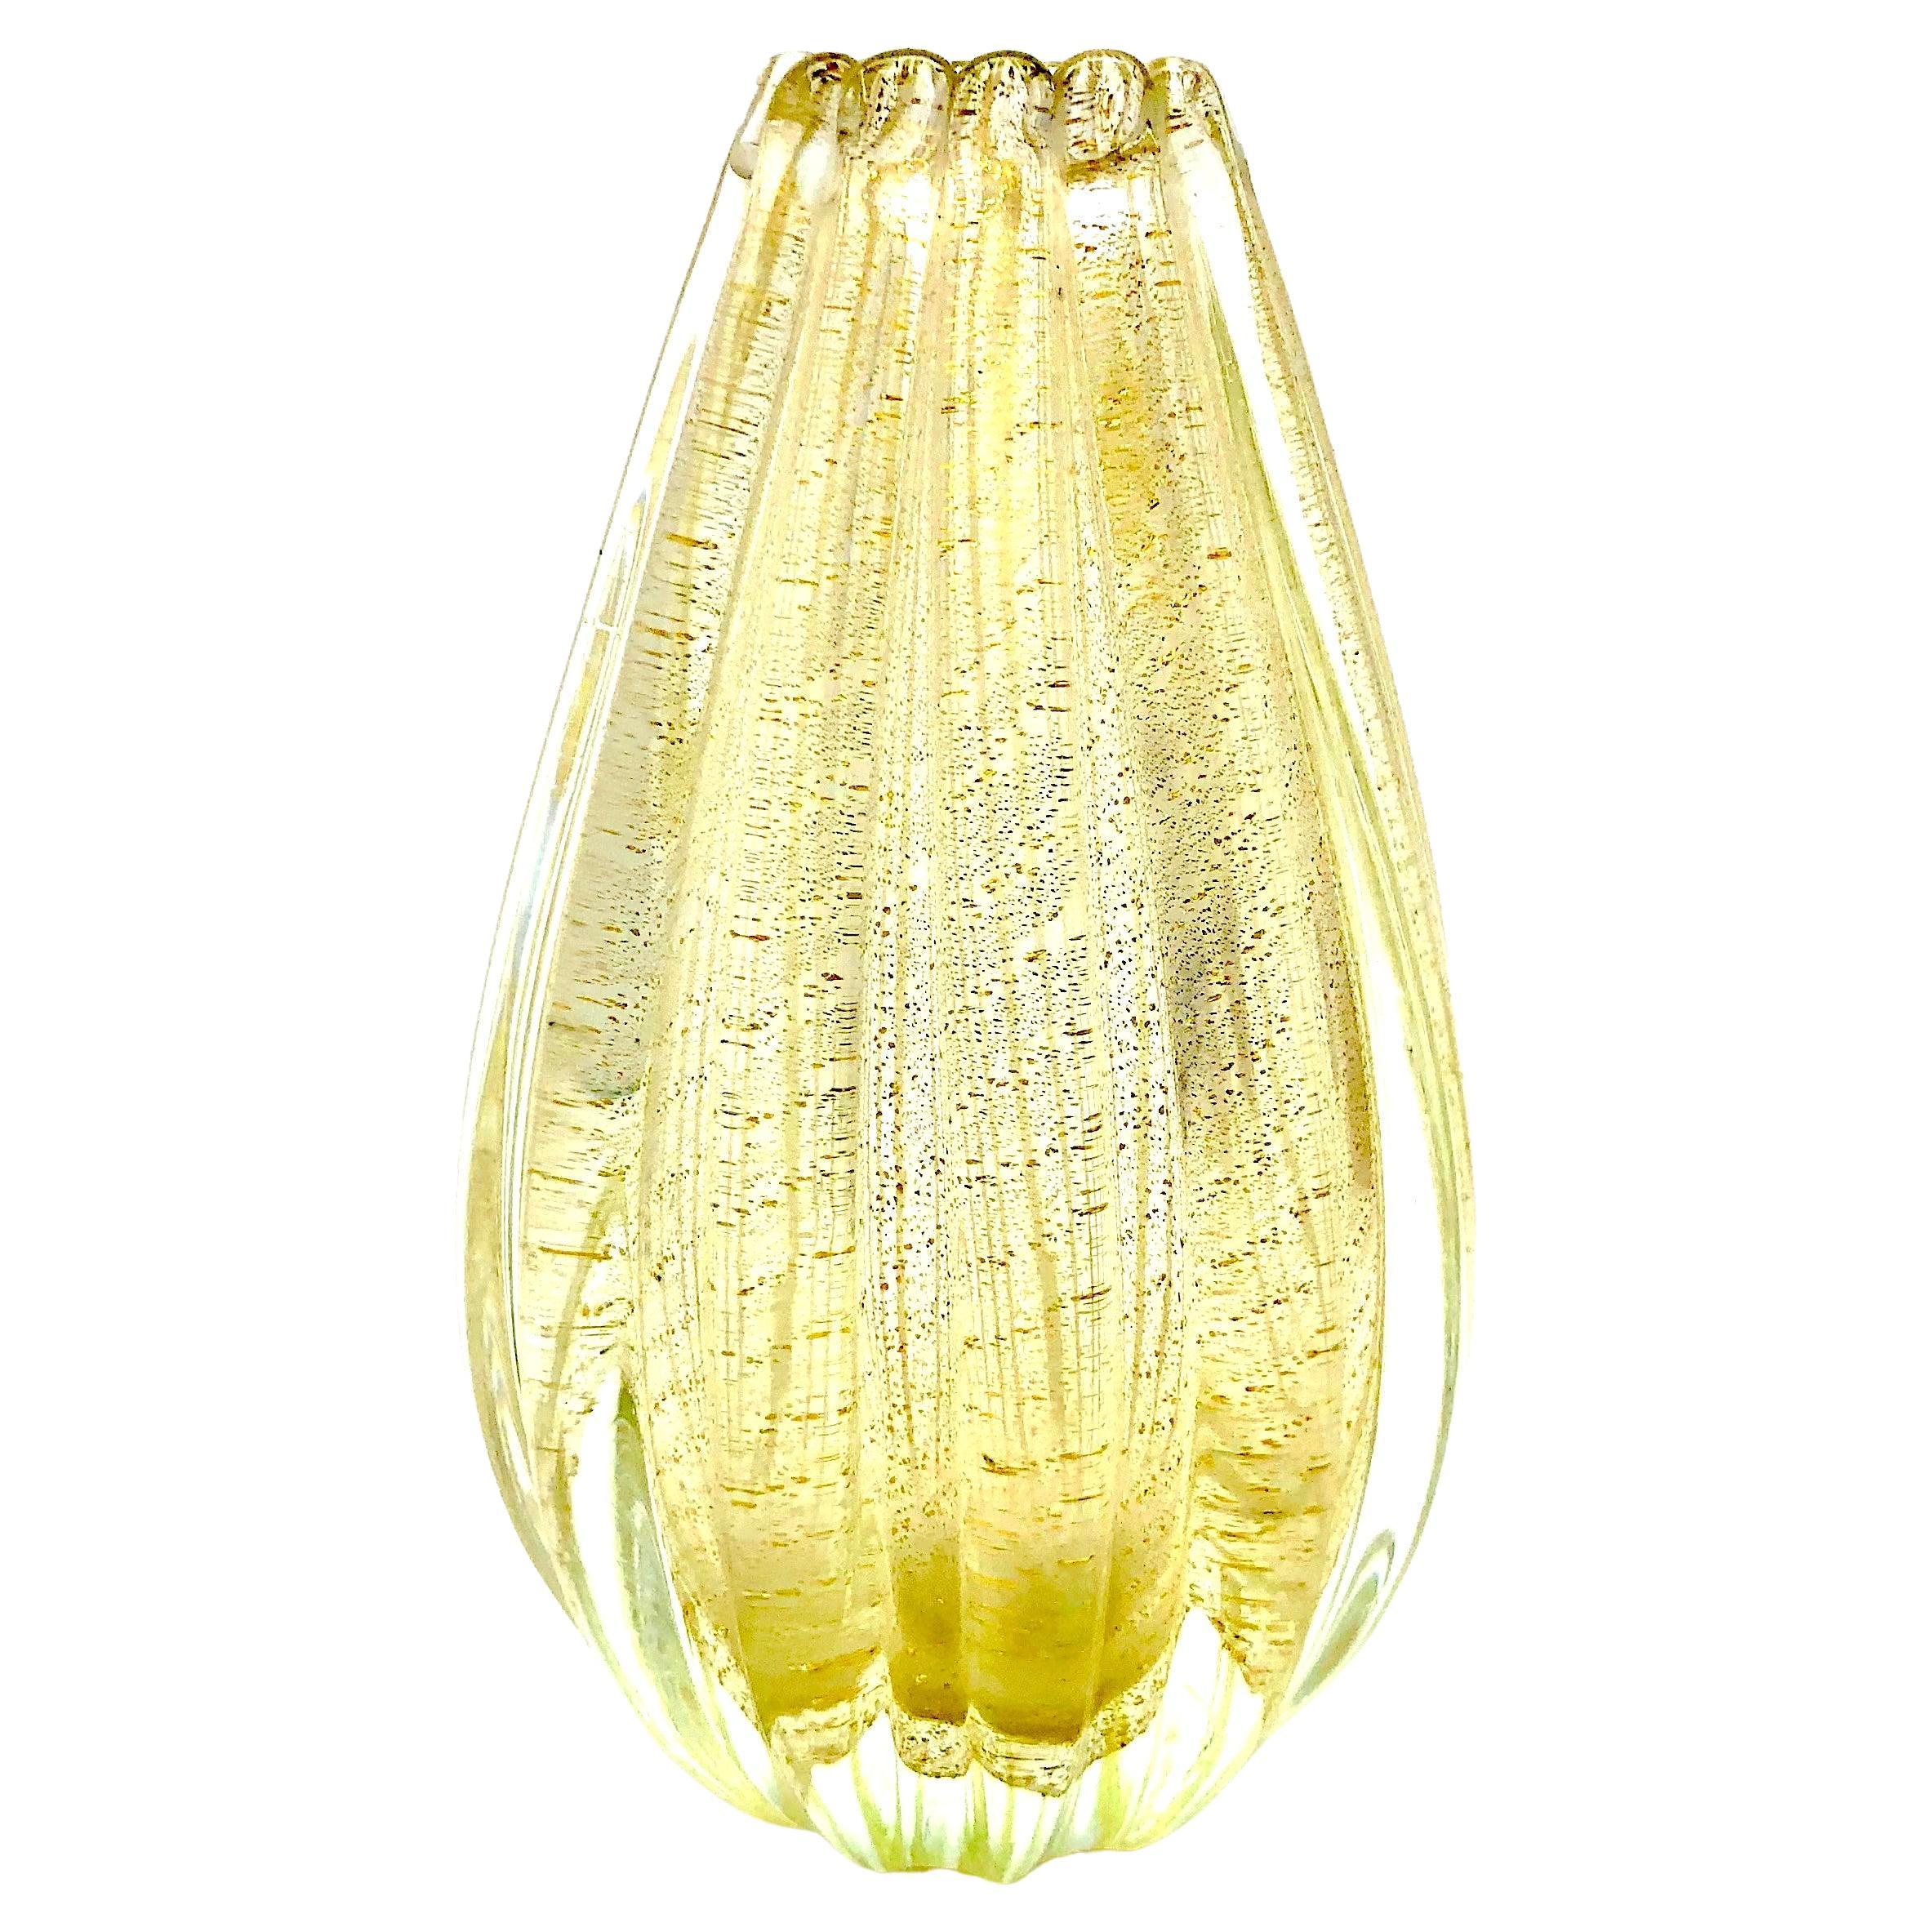 Barovier & Toso Serial No 25361 Cordonato D'Oro Ribbed Glass Vase Murano Venezia